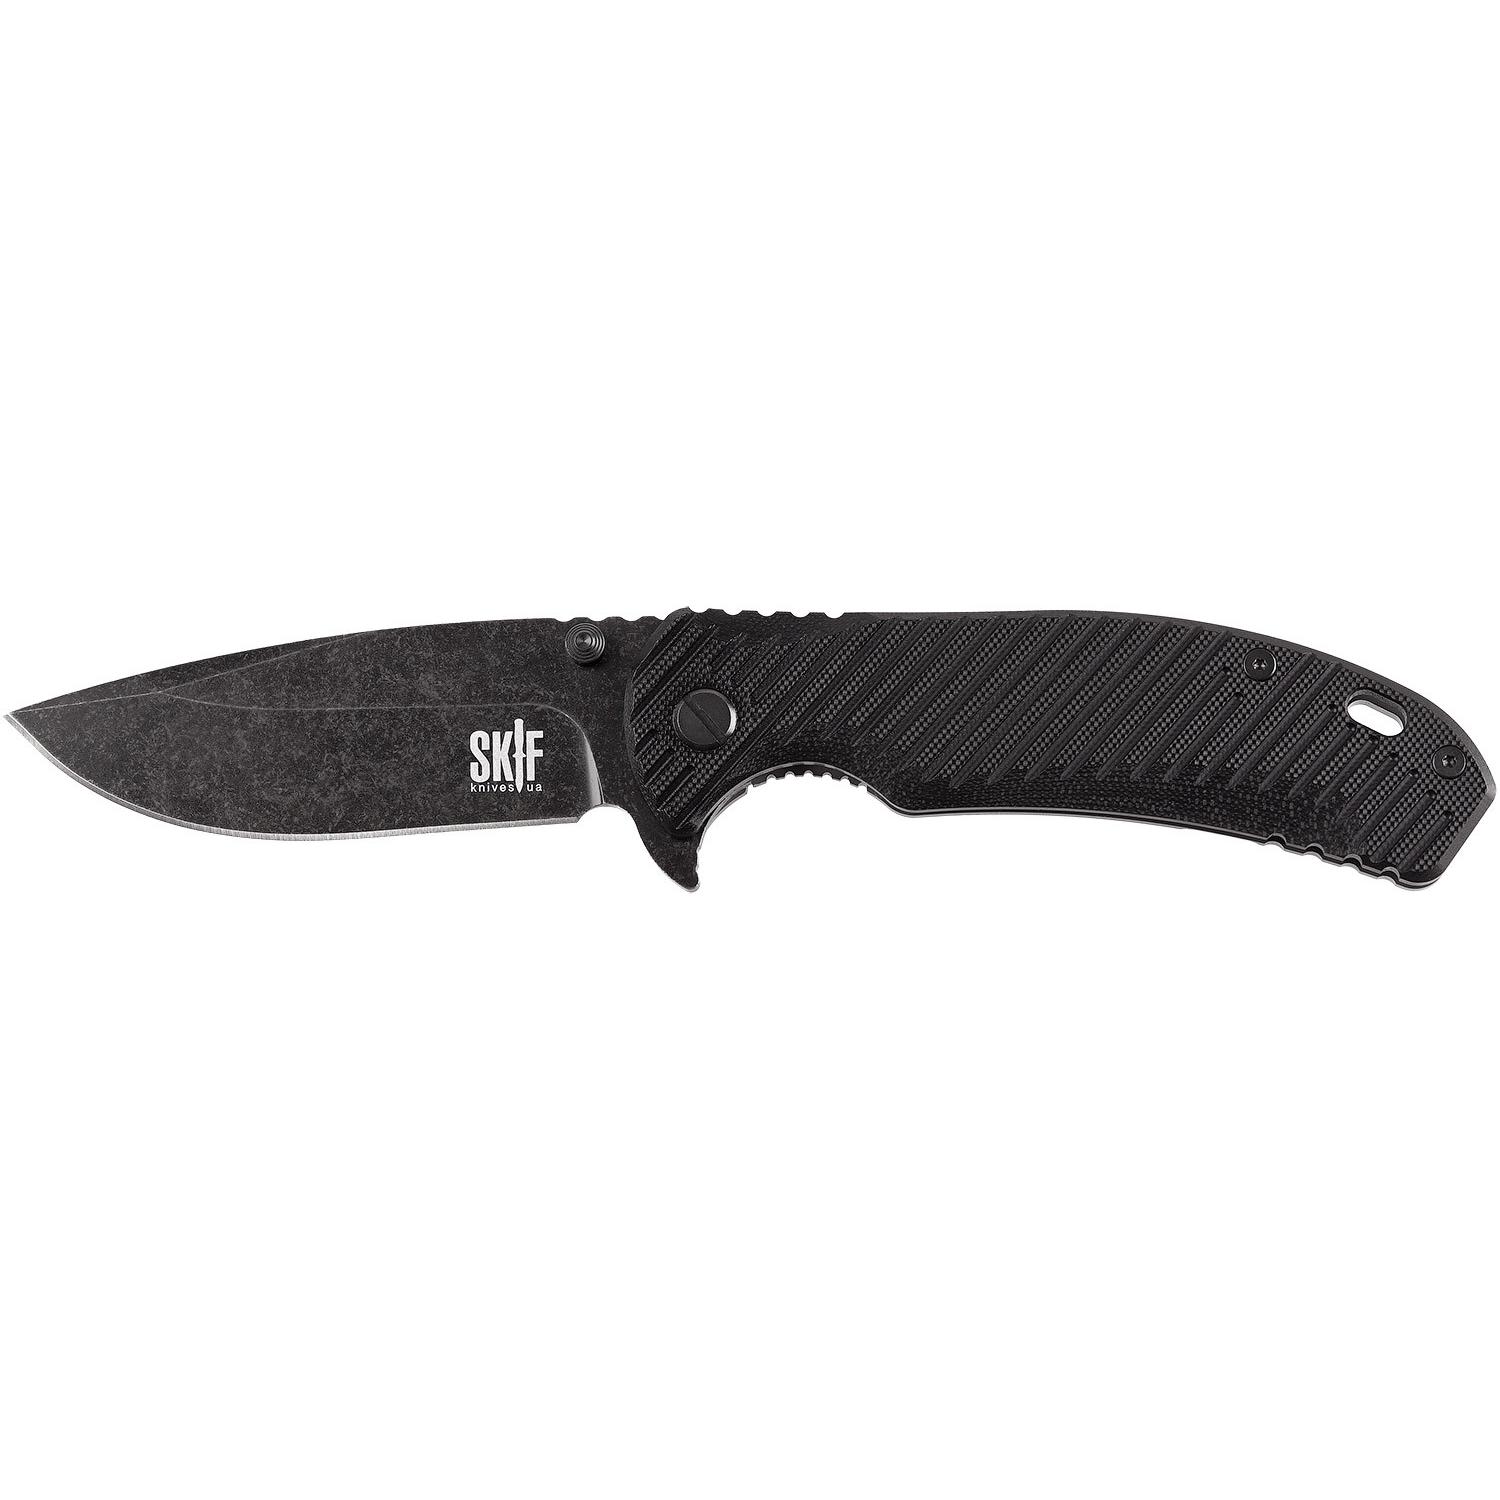 Нож Skif Sturdy II BSW Black 420SEB 1765.02.99